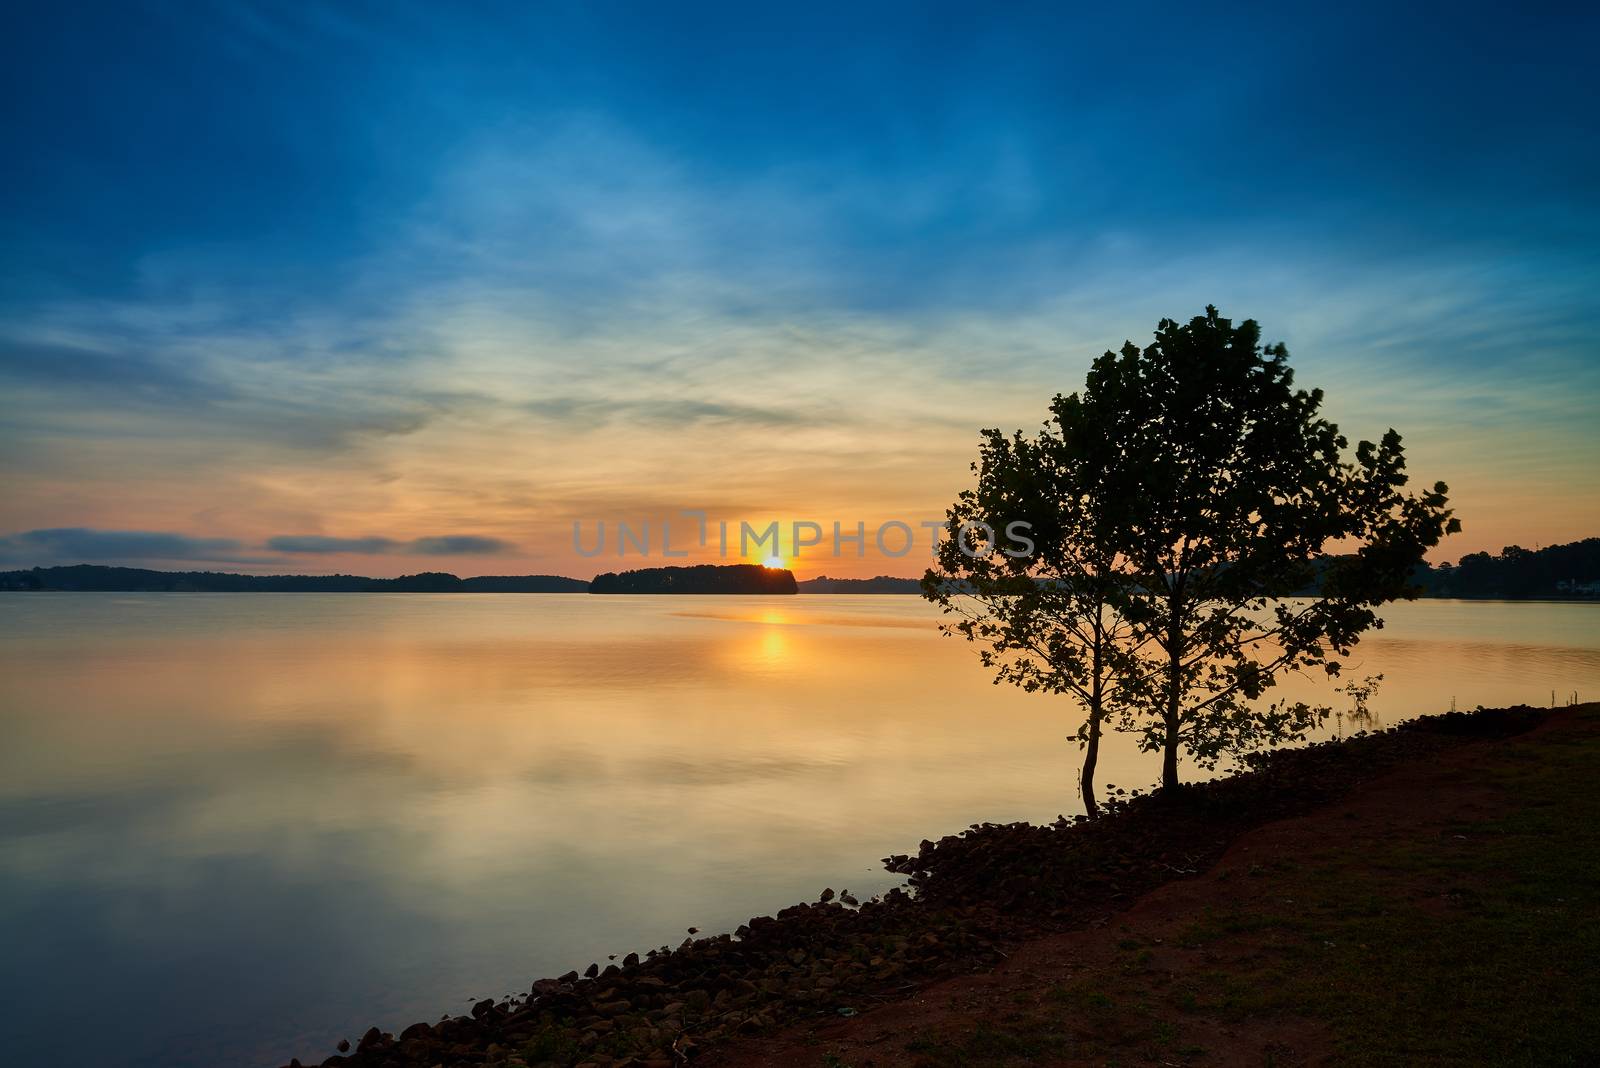 Sunrise on Lake Keowee, SC.